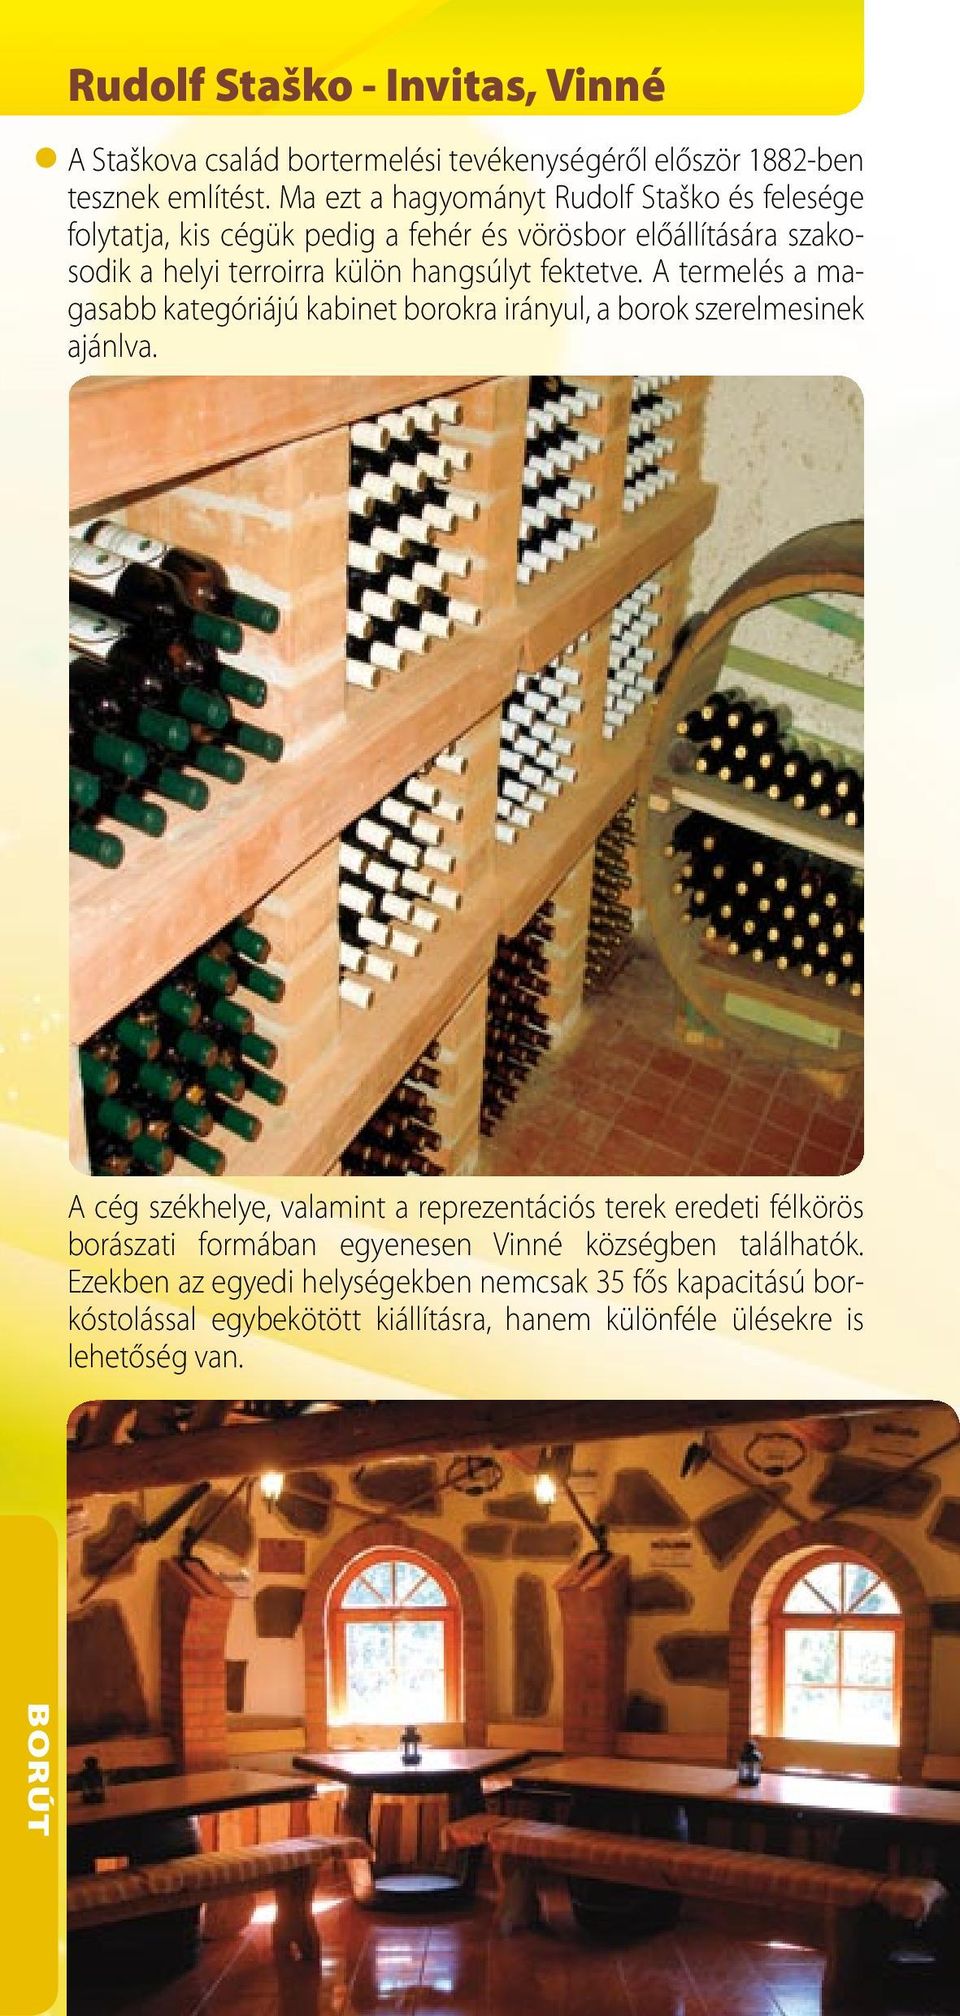 fektetve. A termelés a magasabb kategóriájú kabinet borokra irányul, a borok szerelmesinek ajánlva.